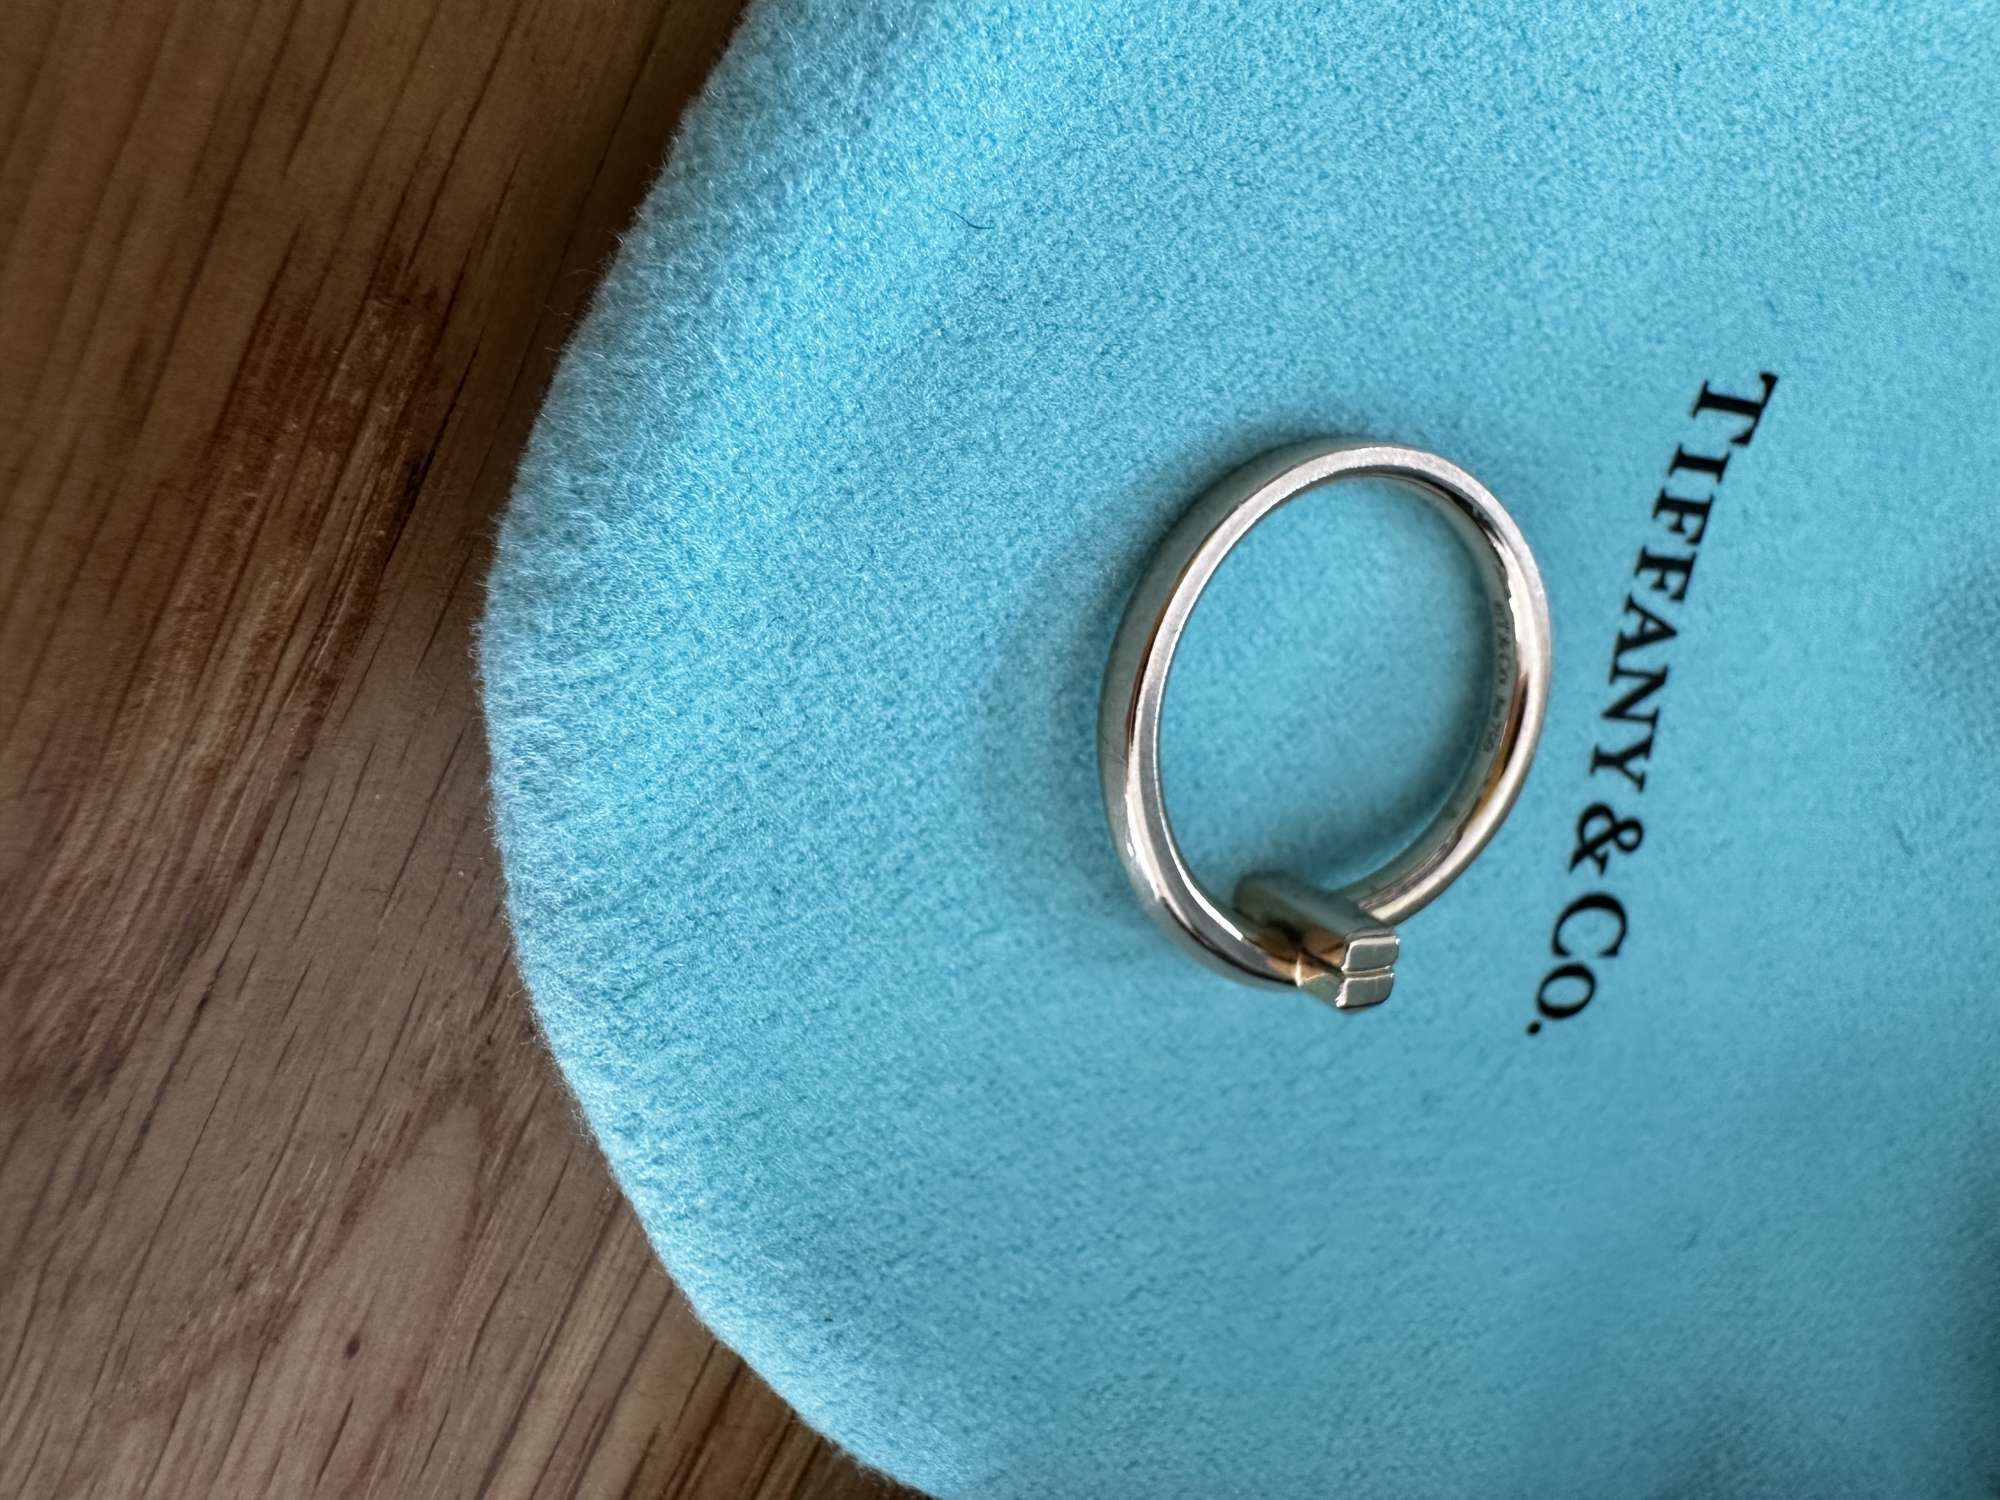 Tiffany & Co prsten